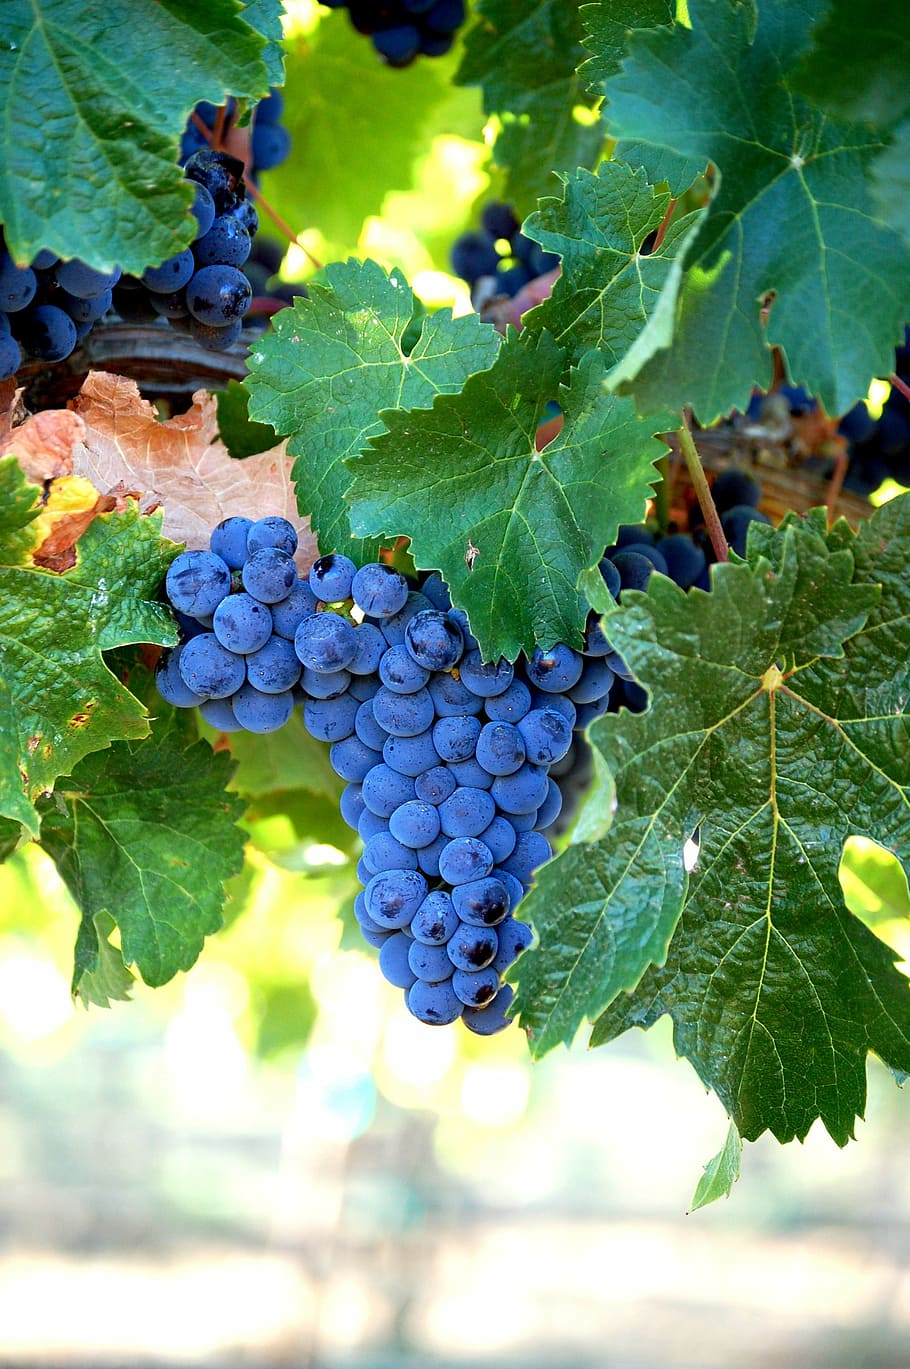 anggur biru, merlot, anggur, buah, panen, cluster, grapevine, kebun anggur, daun, ikat